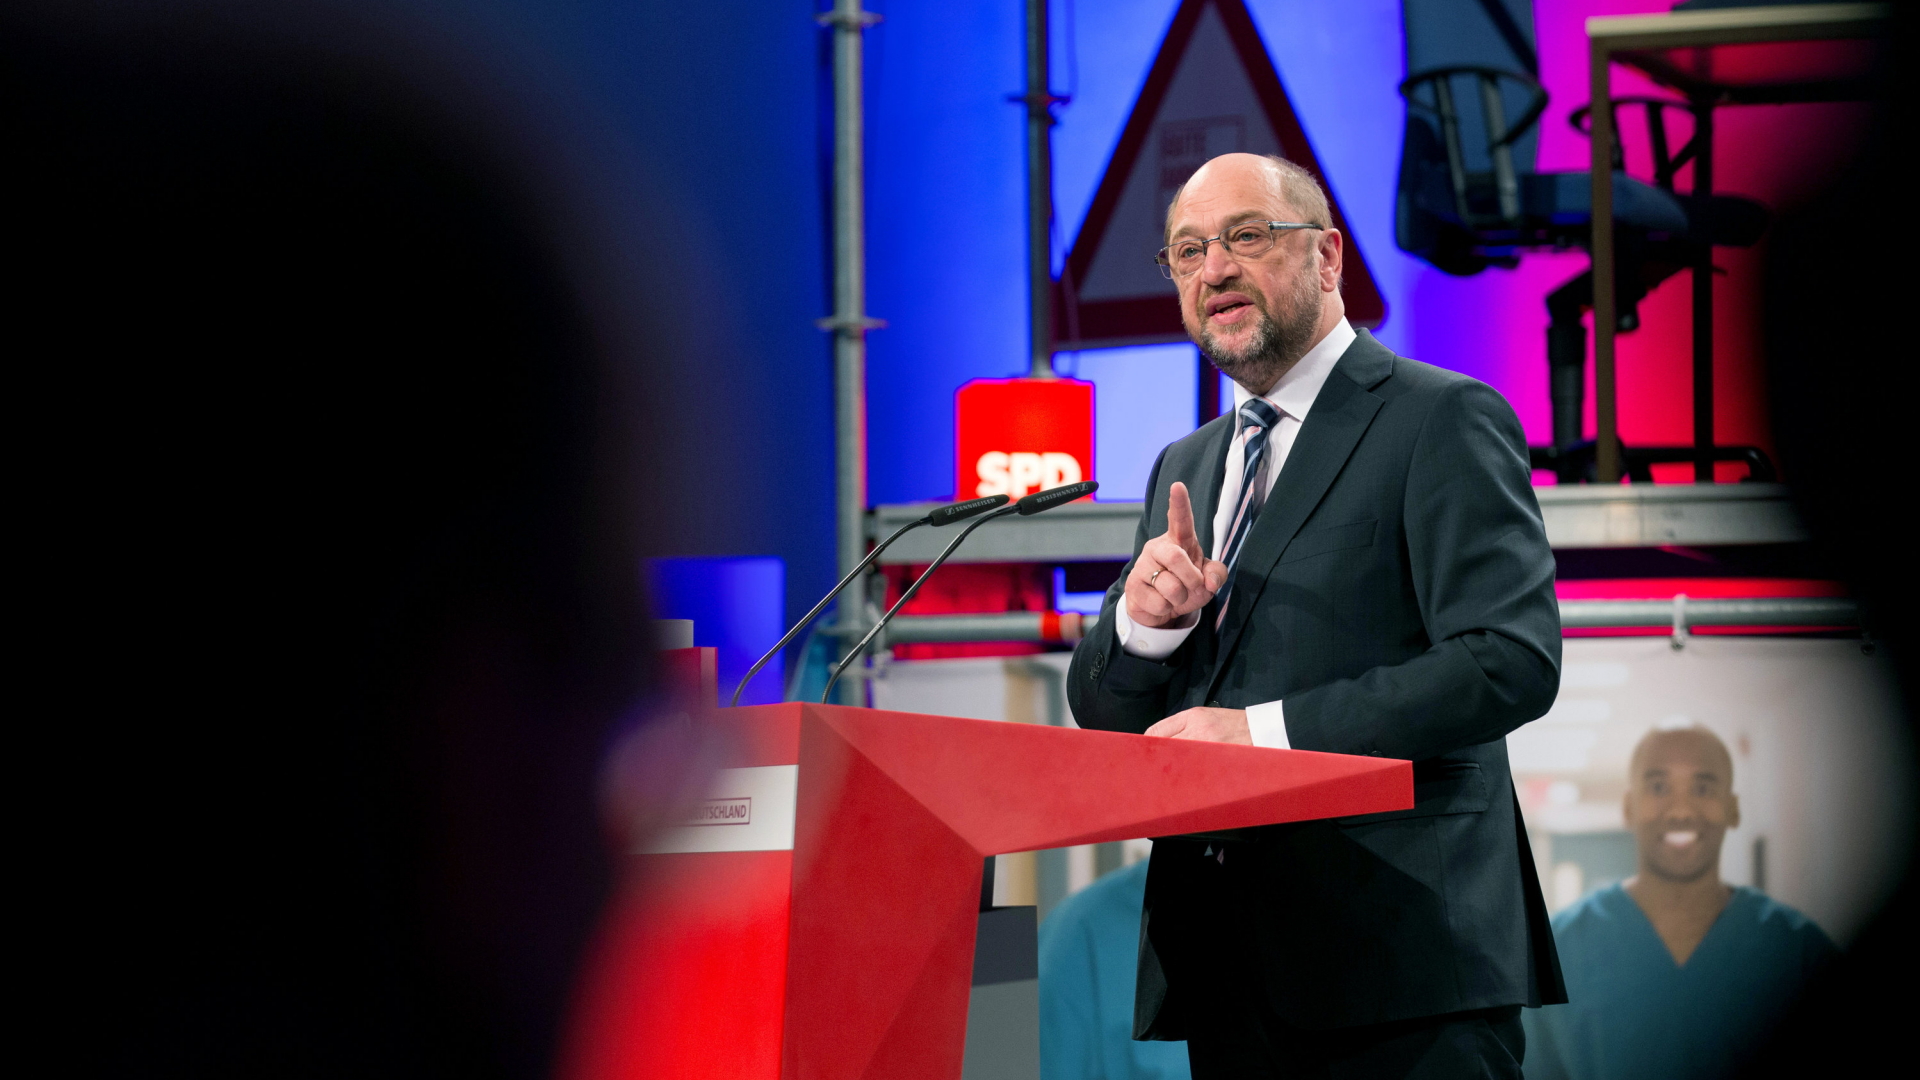 Kommentar: Das ist zu wenig, Martin Schulz!